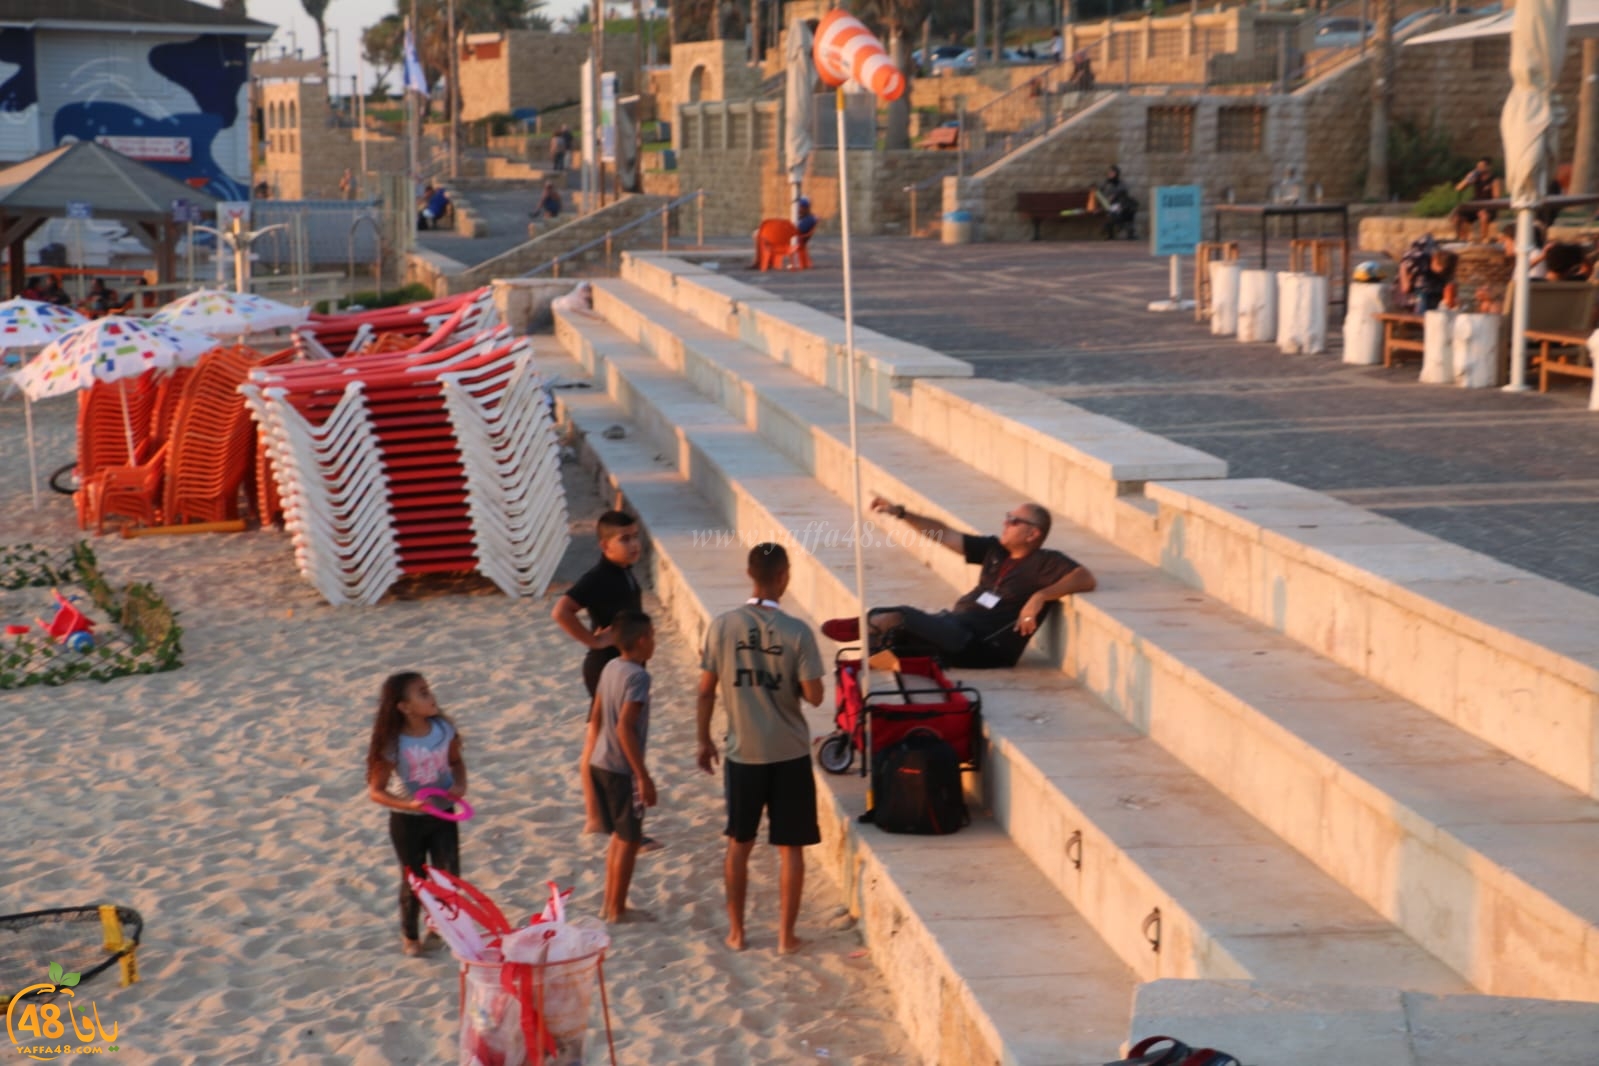 ألعاب ممتعة ضمن فعاليات خميس بالريف على شاطئ بحر يافا